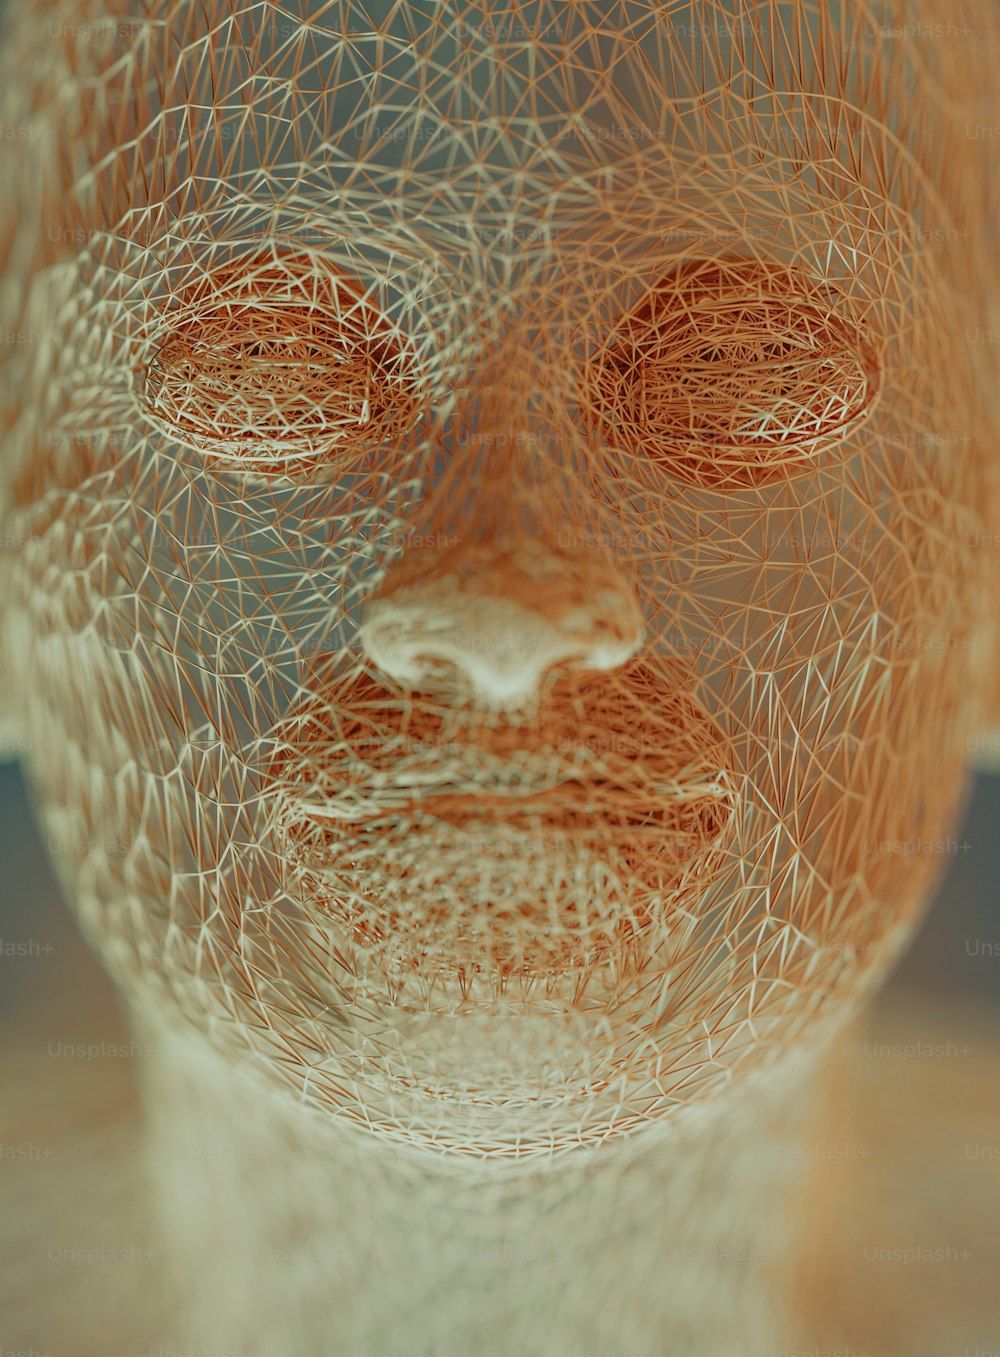 Una scultura metallica del volto di un uomo con gli occhi chiusi